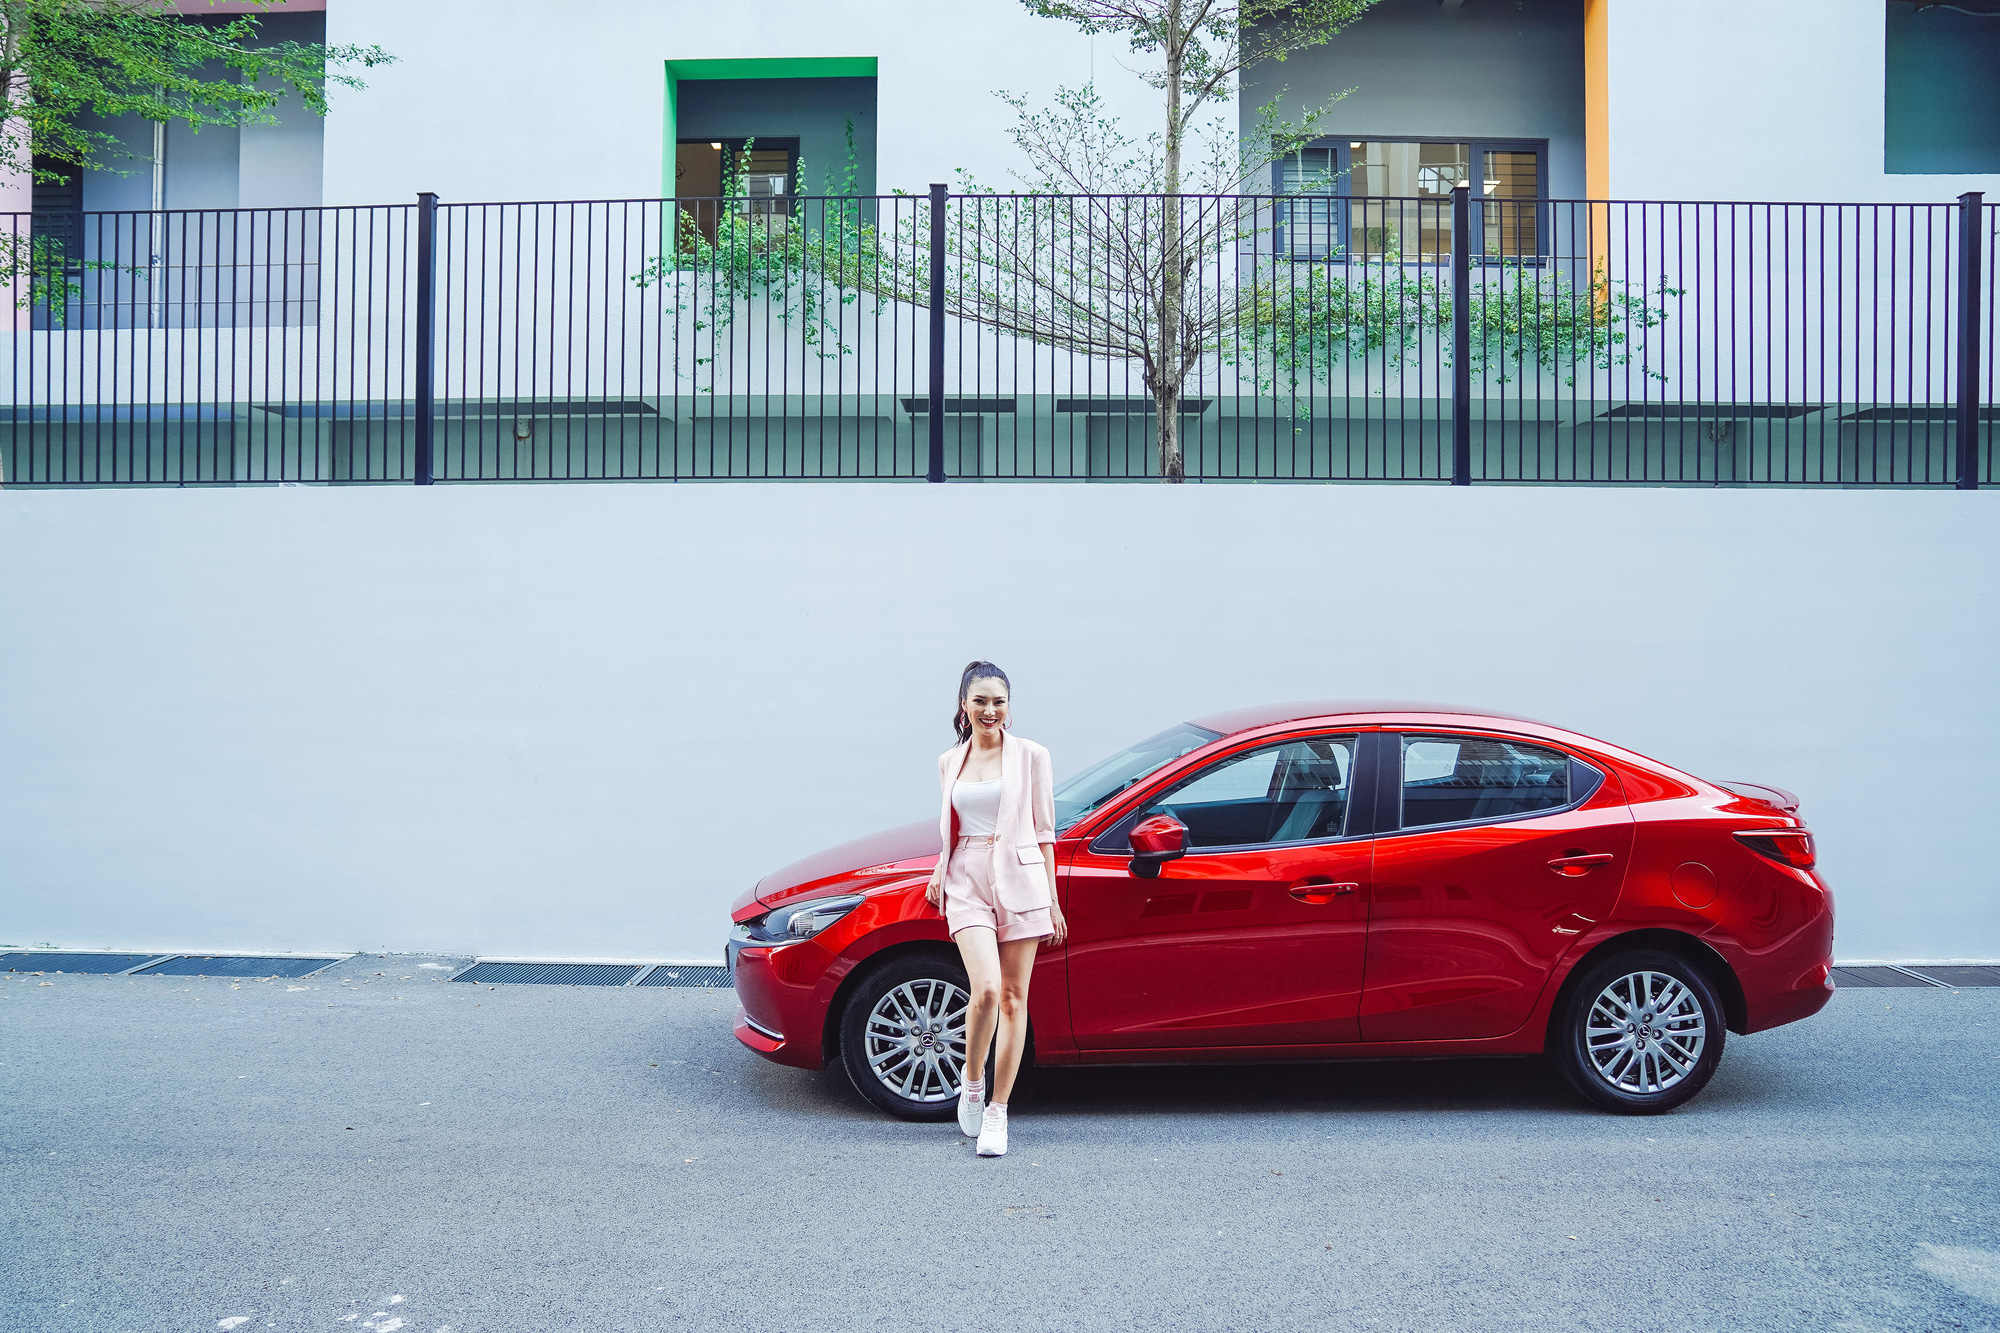 Mazda2 mới tái định nghĩa phân khúc sedan hạng B tầm giá 500 triệu đồng - Ảnh 4.